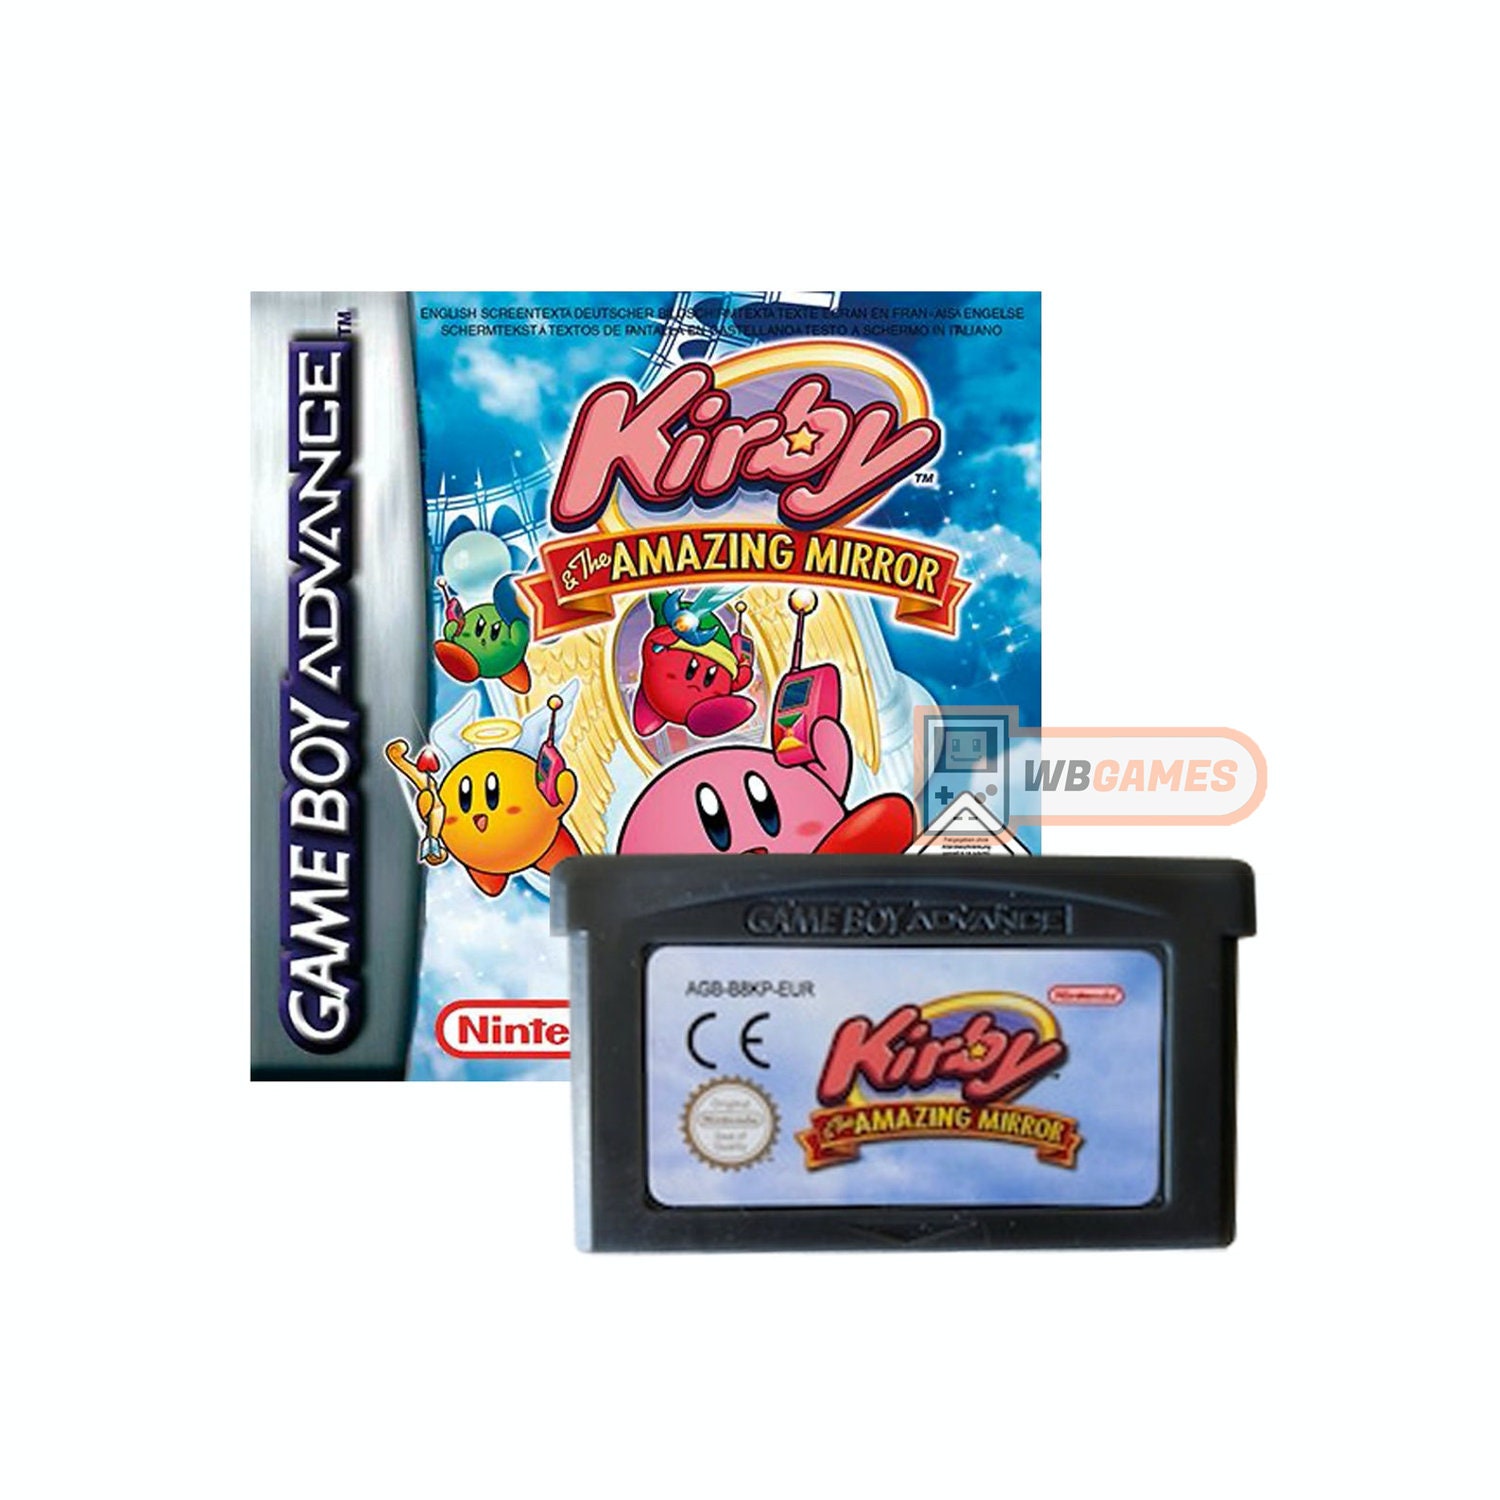 Kirby Gba - Etsy